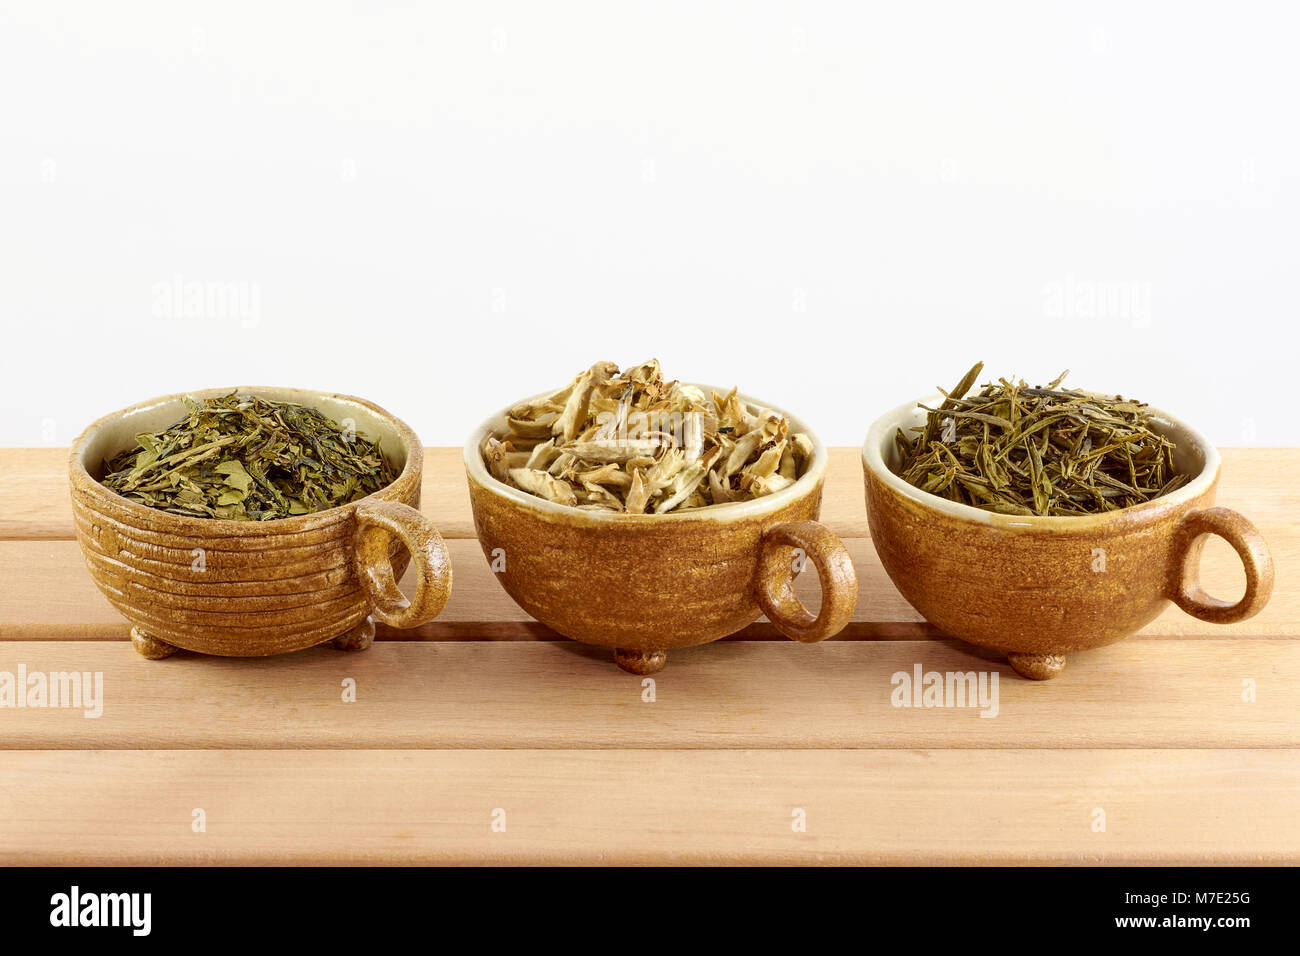 Tre tazze con verde bianco e le foglie di tè su sfondo bianco Foto Stock